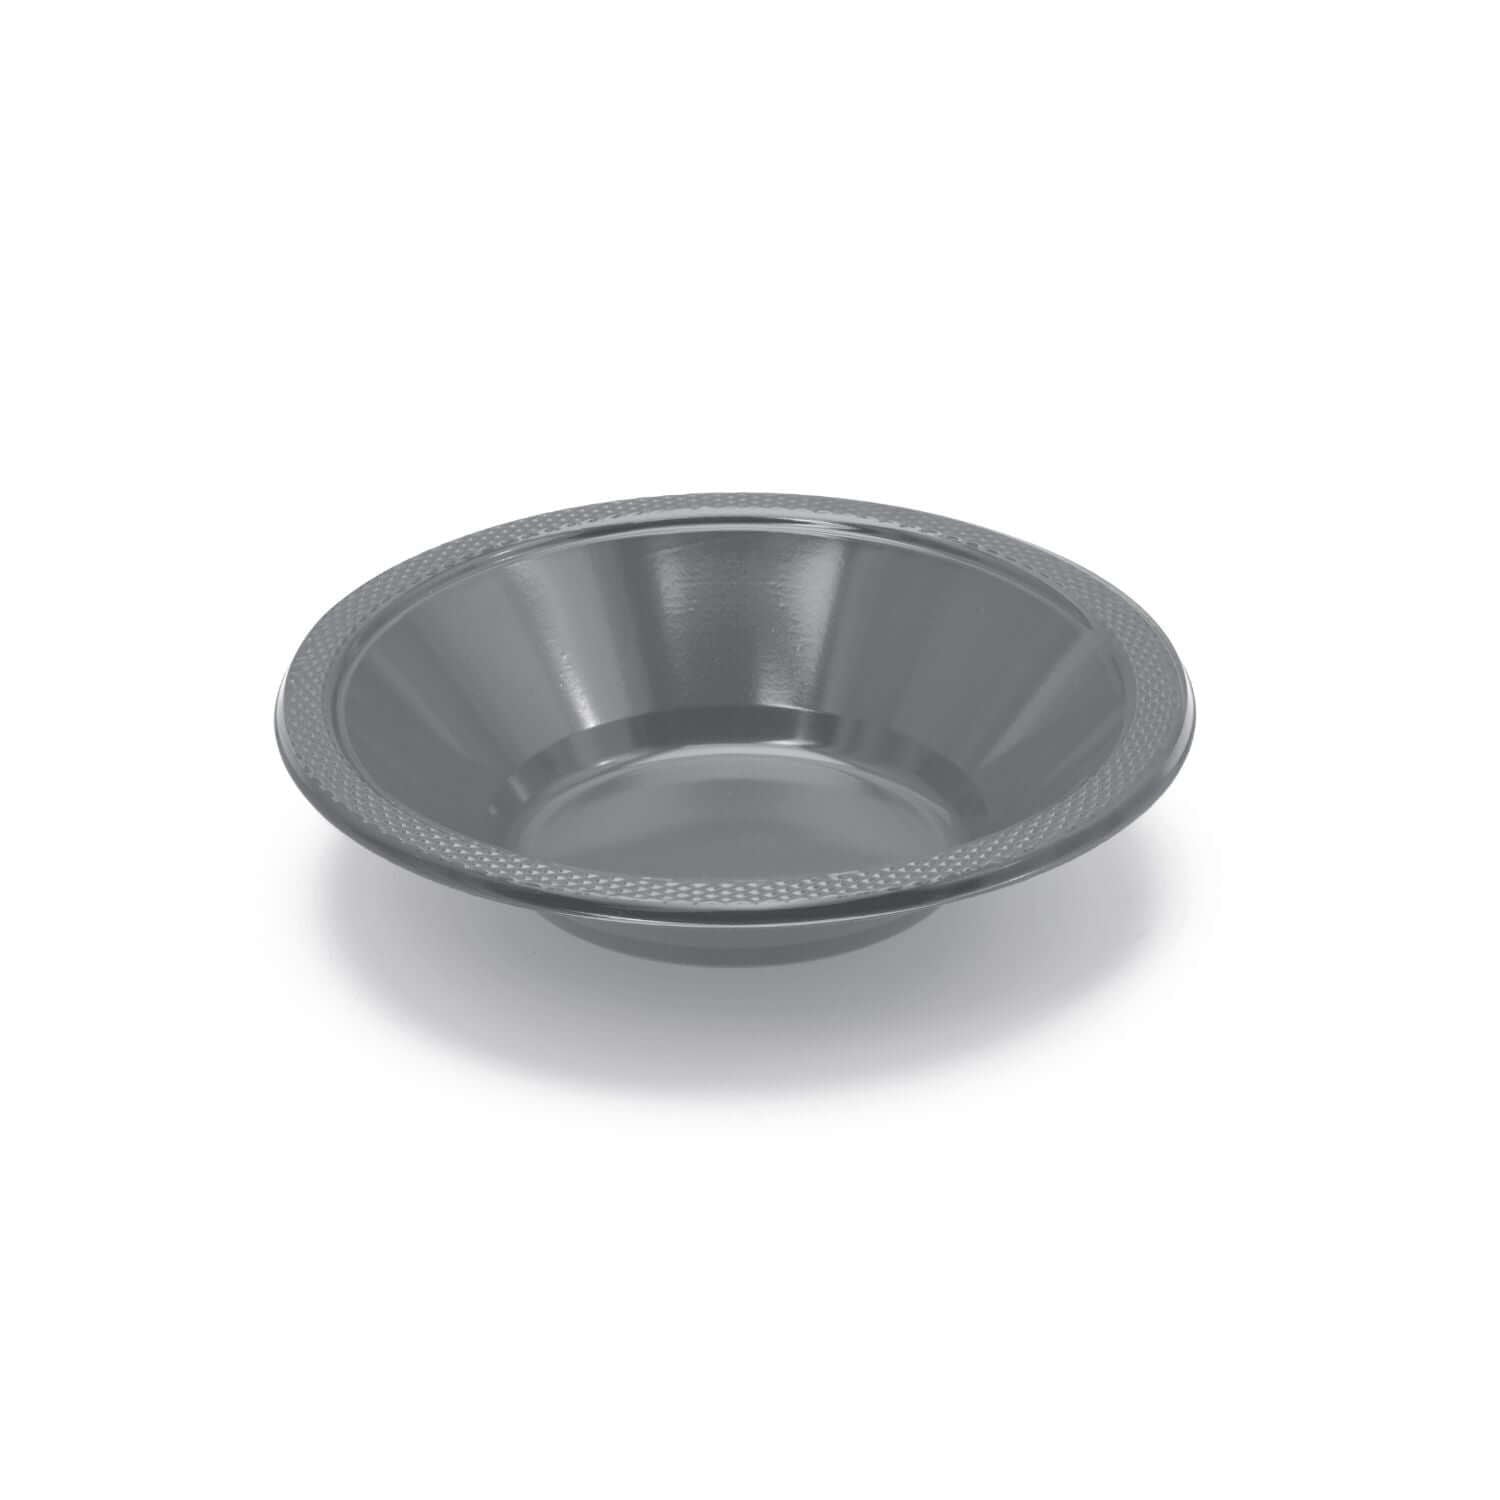 12 Oz. Silver Plastic Bowls | 600 Count - Yom Tov Settings